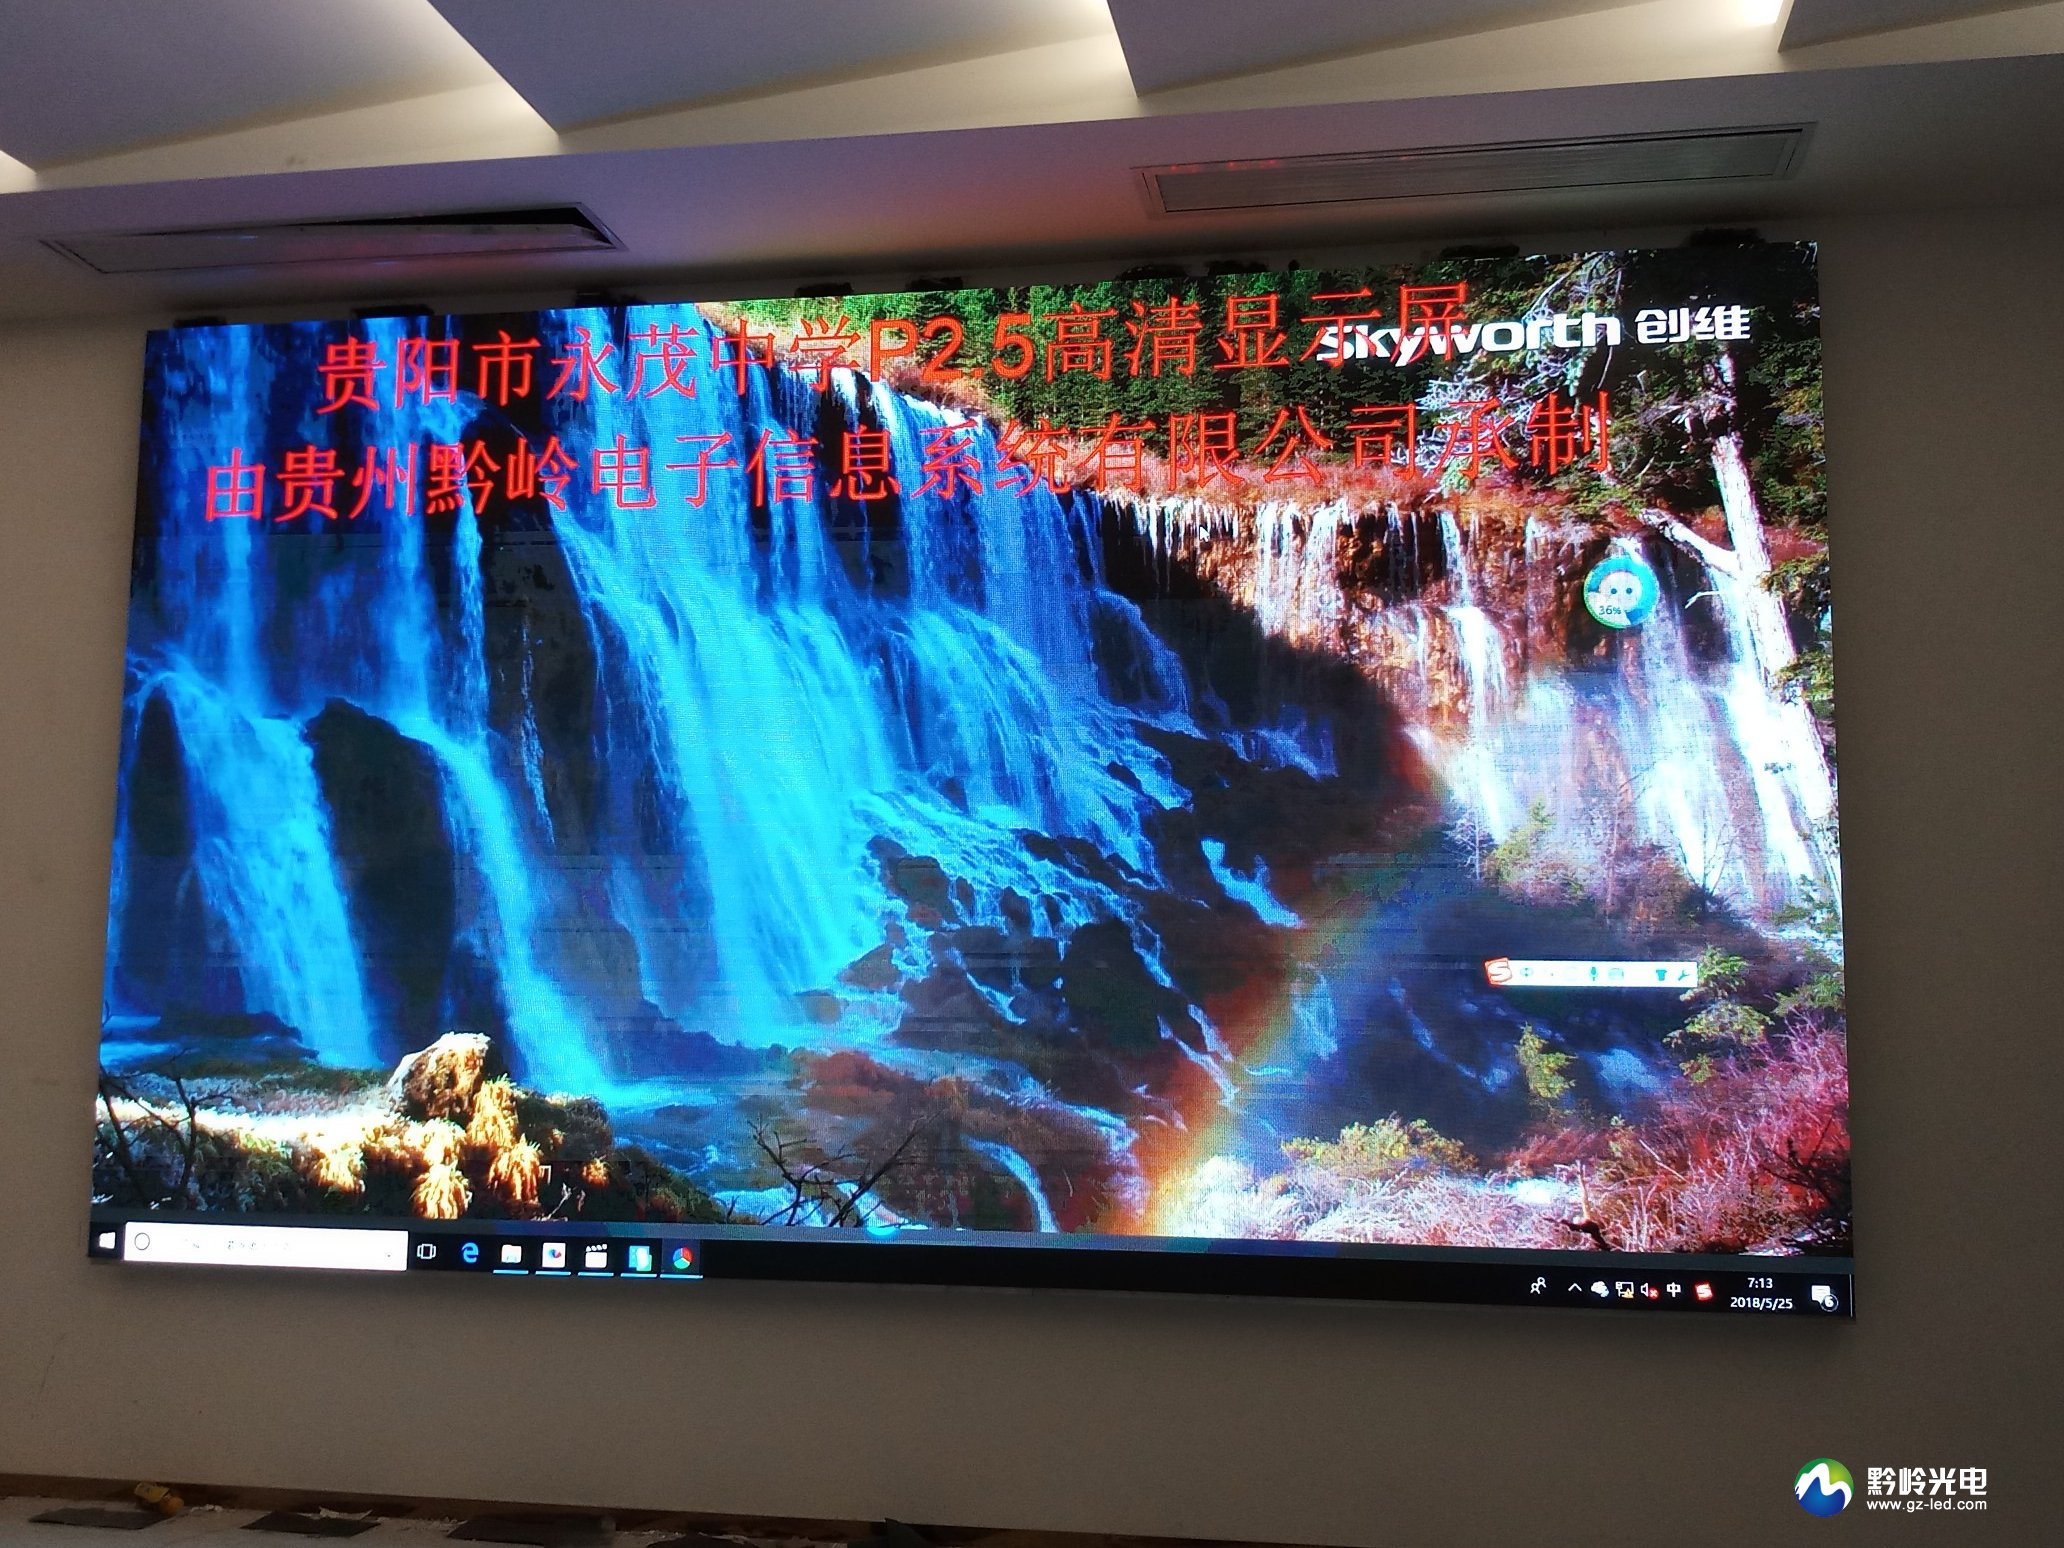 贵阳市白云区永茂中学P2.5LED显示屏项目有贵州黔岭电子制作，采用P2.5高清系列产品。